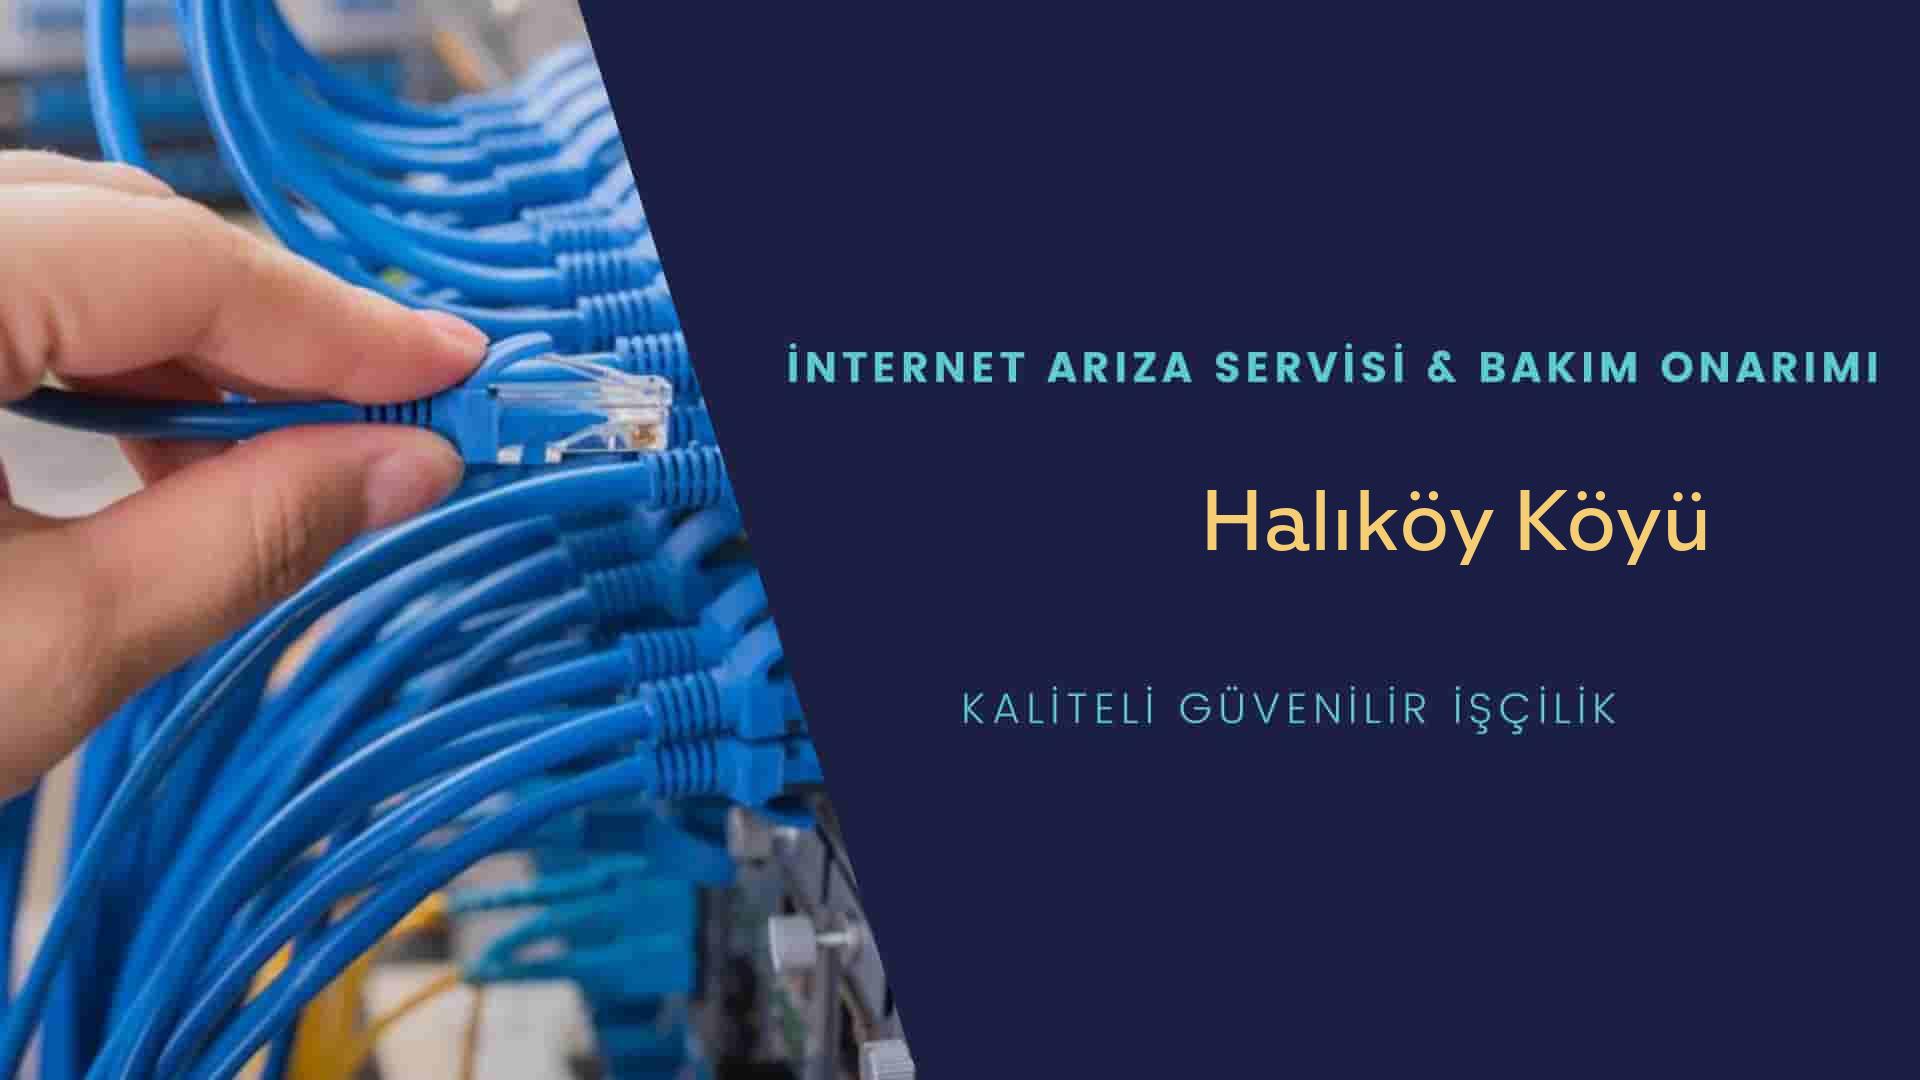 Halıköy Köyü internet kablosu çekimi yapan yerler veya elektrikçiler mi? arıyorsunuz doğru yerdesiniz o zaman sizlere 7/24 yardımcı olacak profesyonel ustalarımız bir telefon kadar yakındır size.